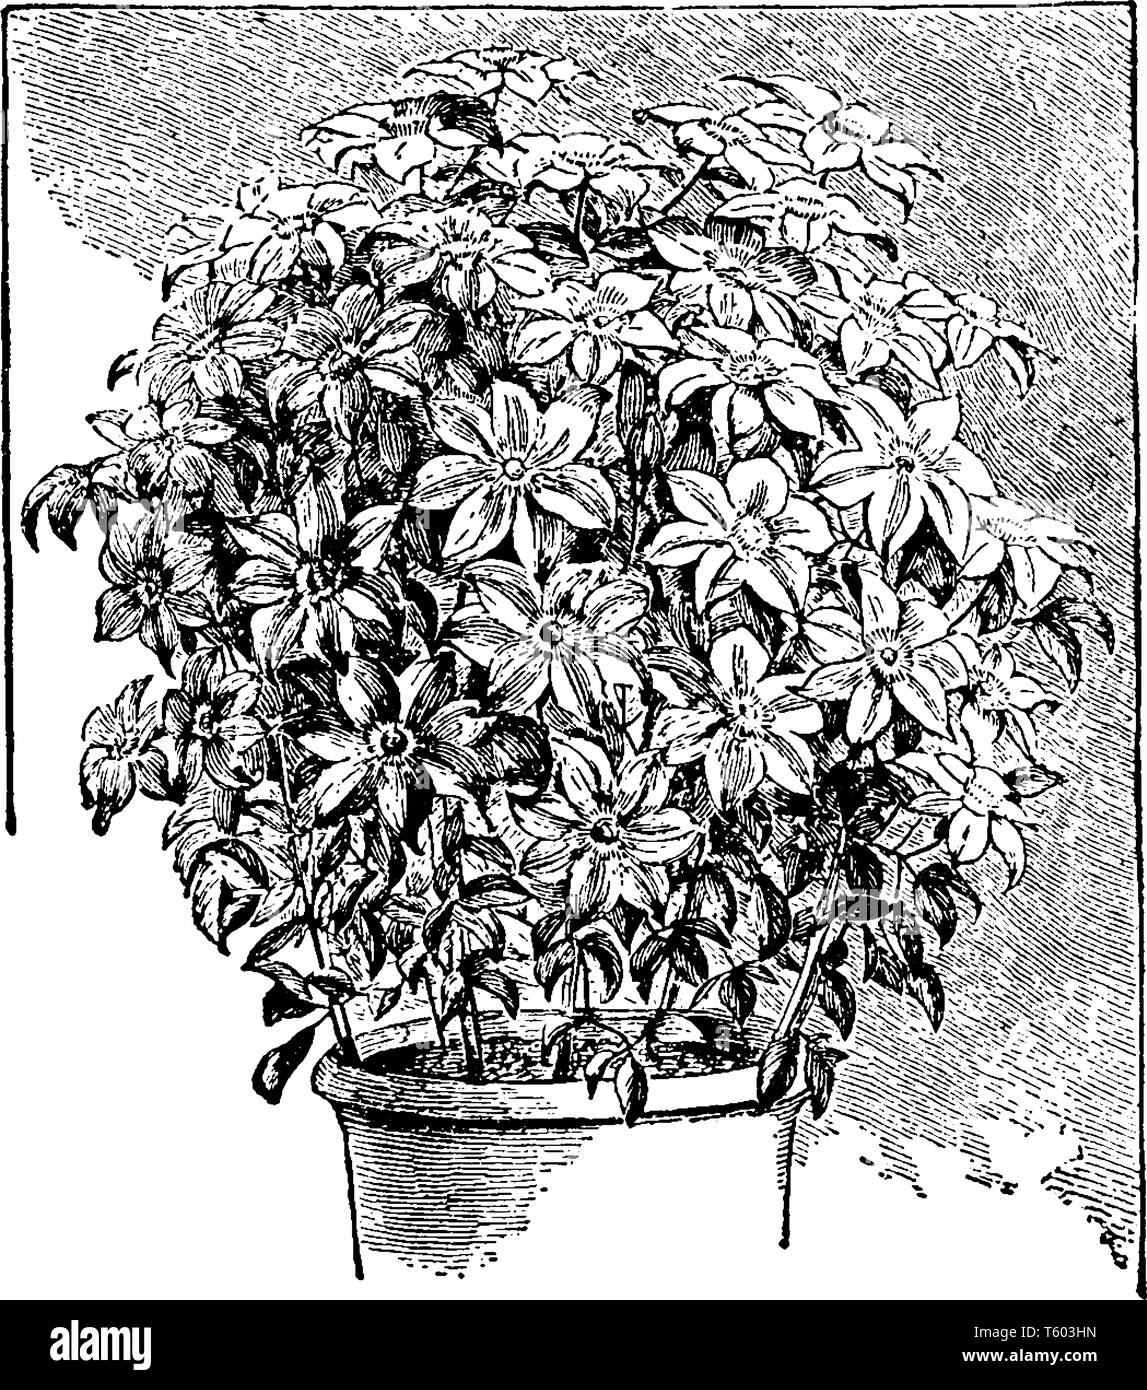 Immagine che mostra la clematide pianta. Pianta è pieno di fiori. Le foglie sono di piccole dimensioni e sono sviluppati nei pressi di massa, vintage disegno della linea o incisione Illustrazione Vettoriale